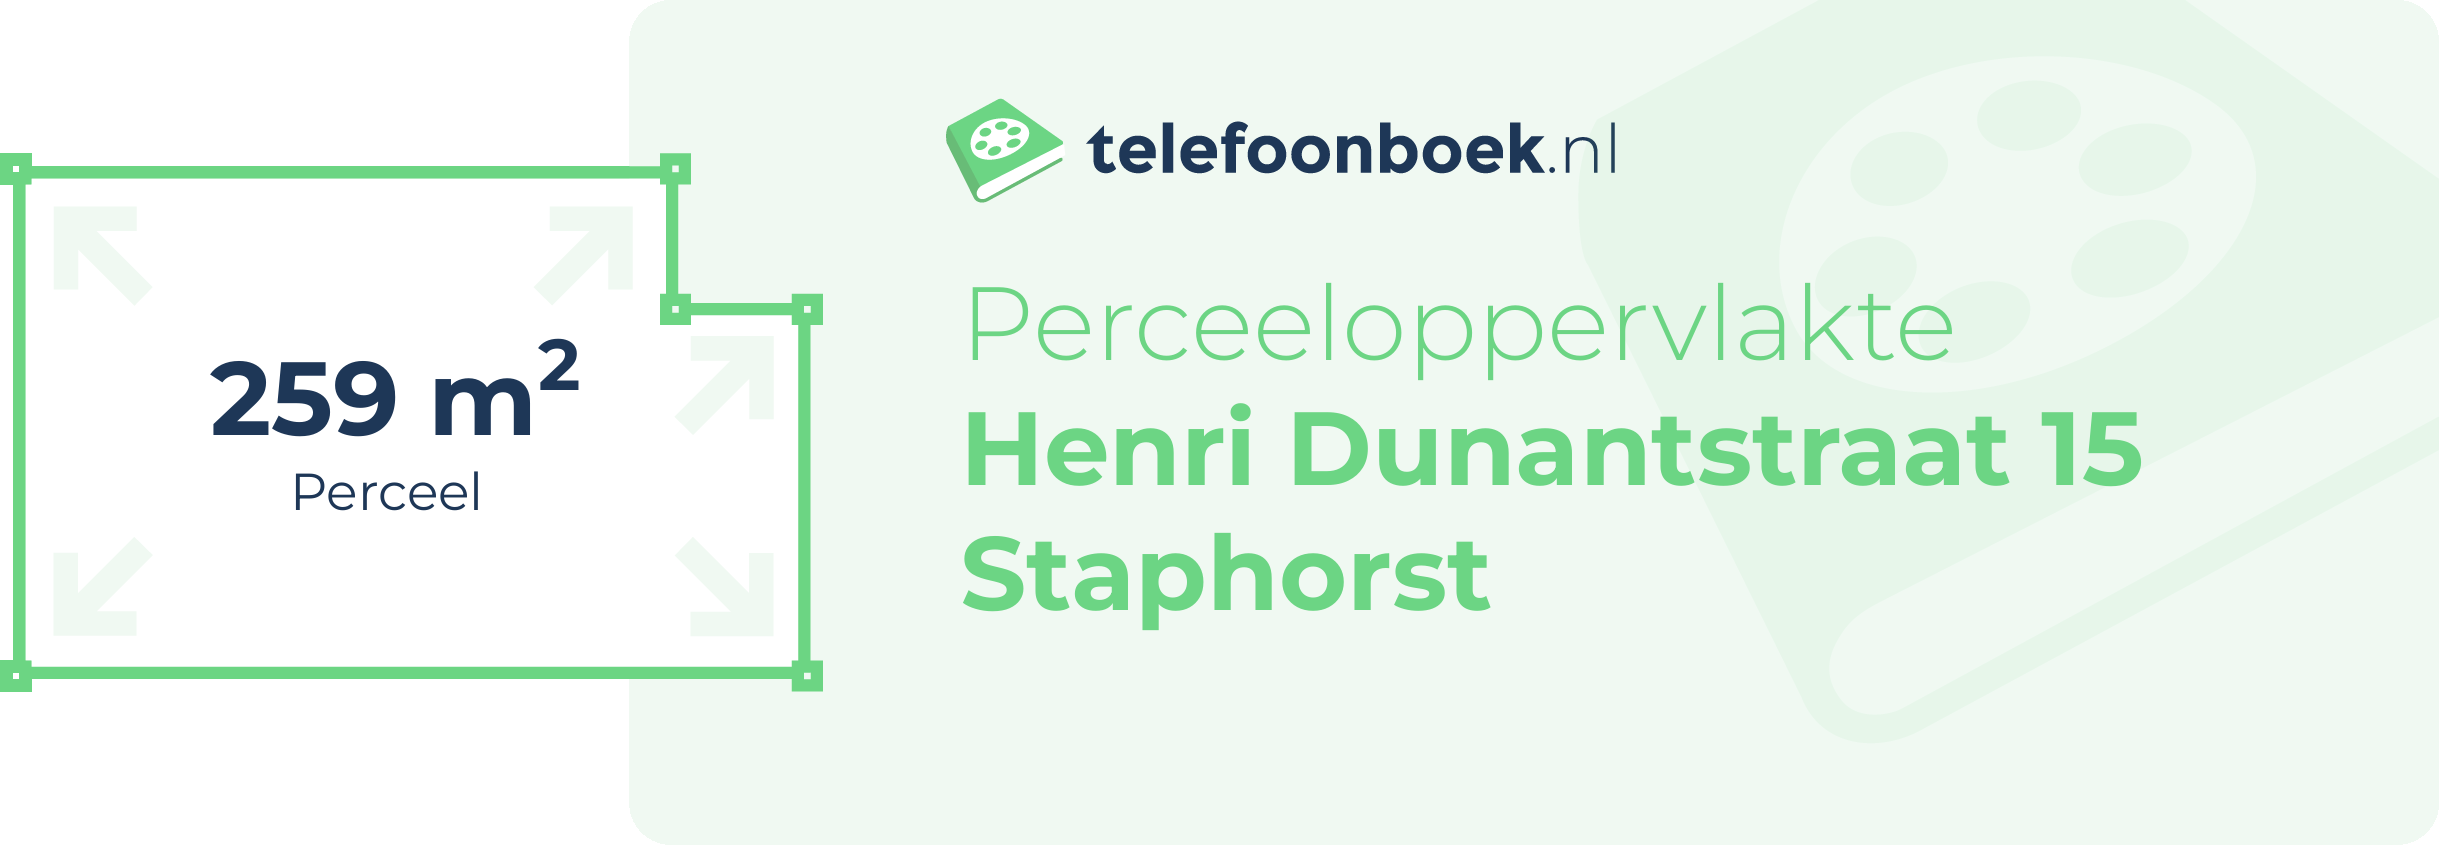 Perceeloppervlakte Henri Dunantstraat 15 Staphorst